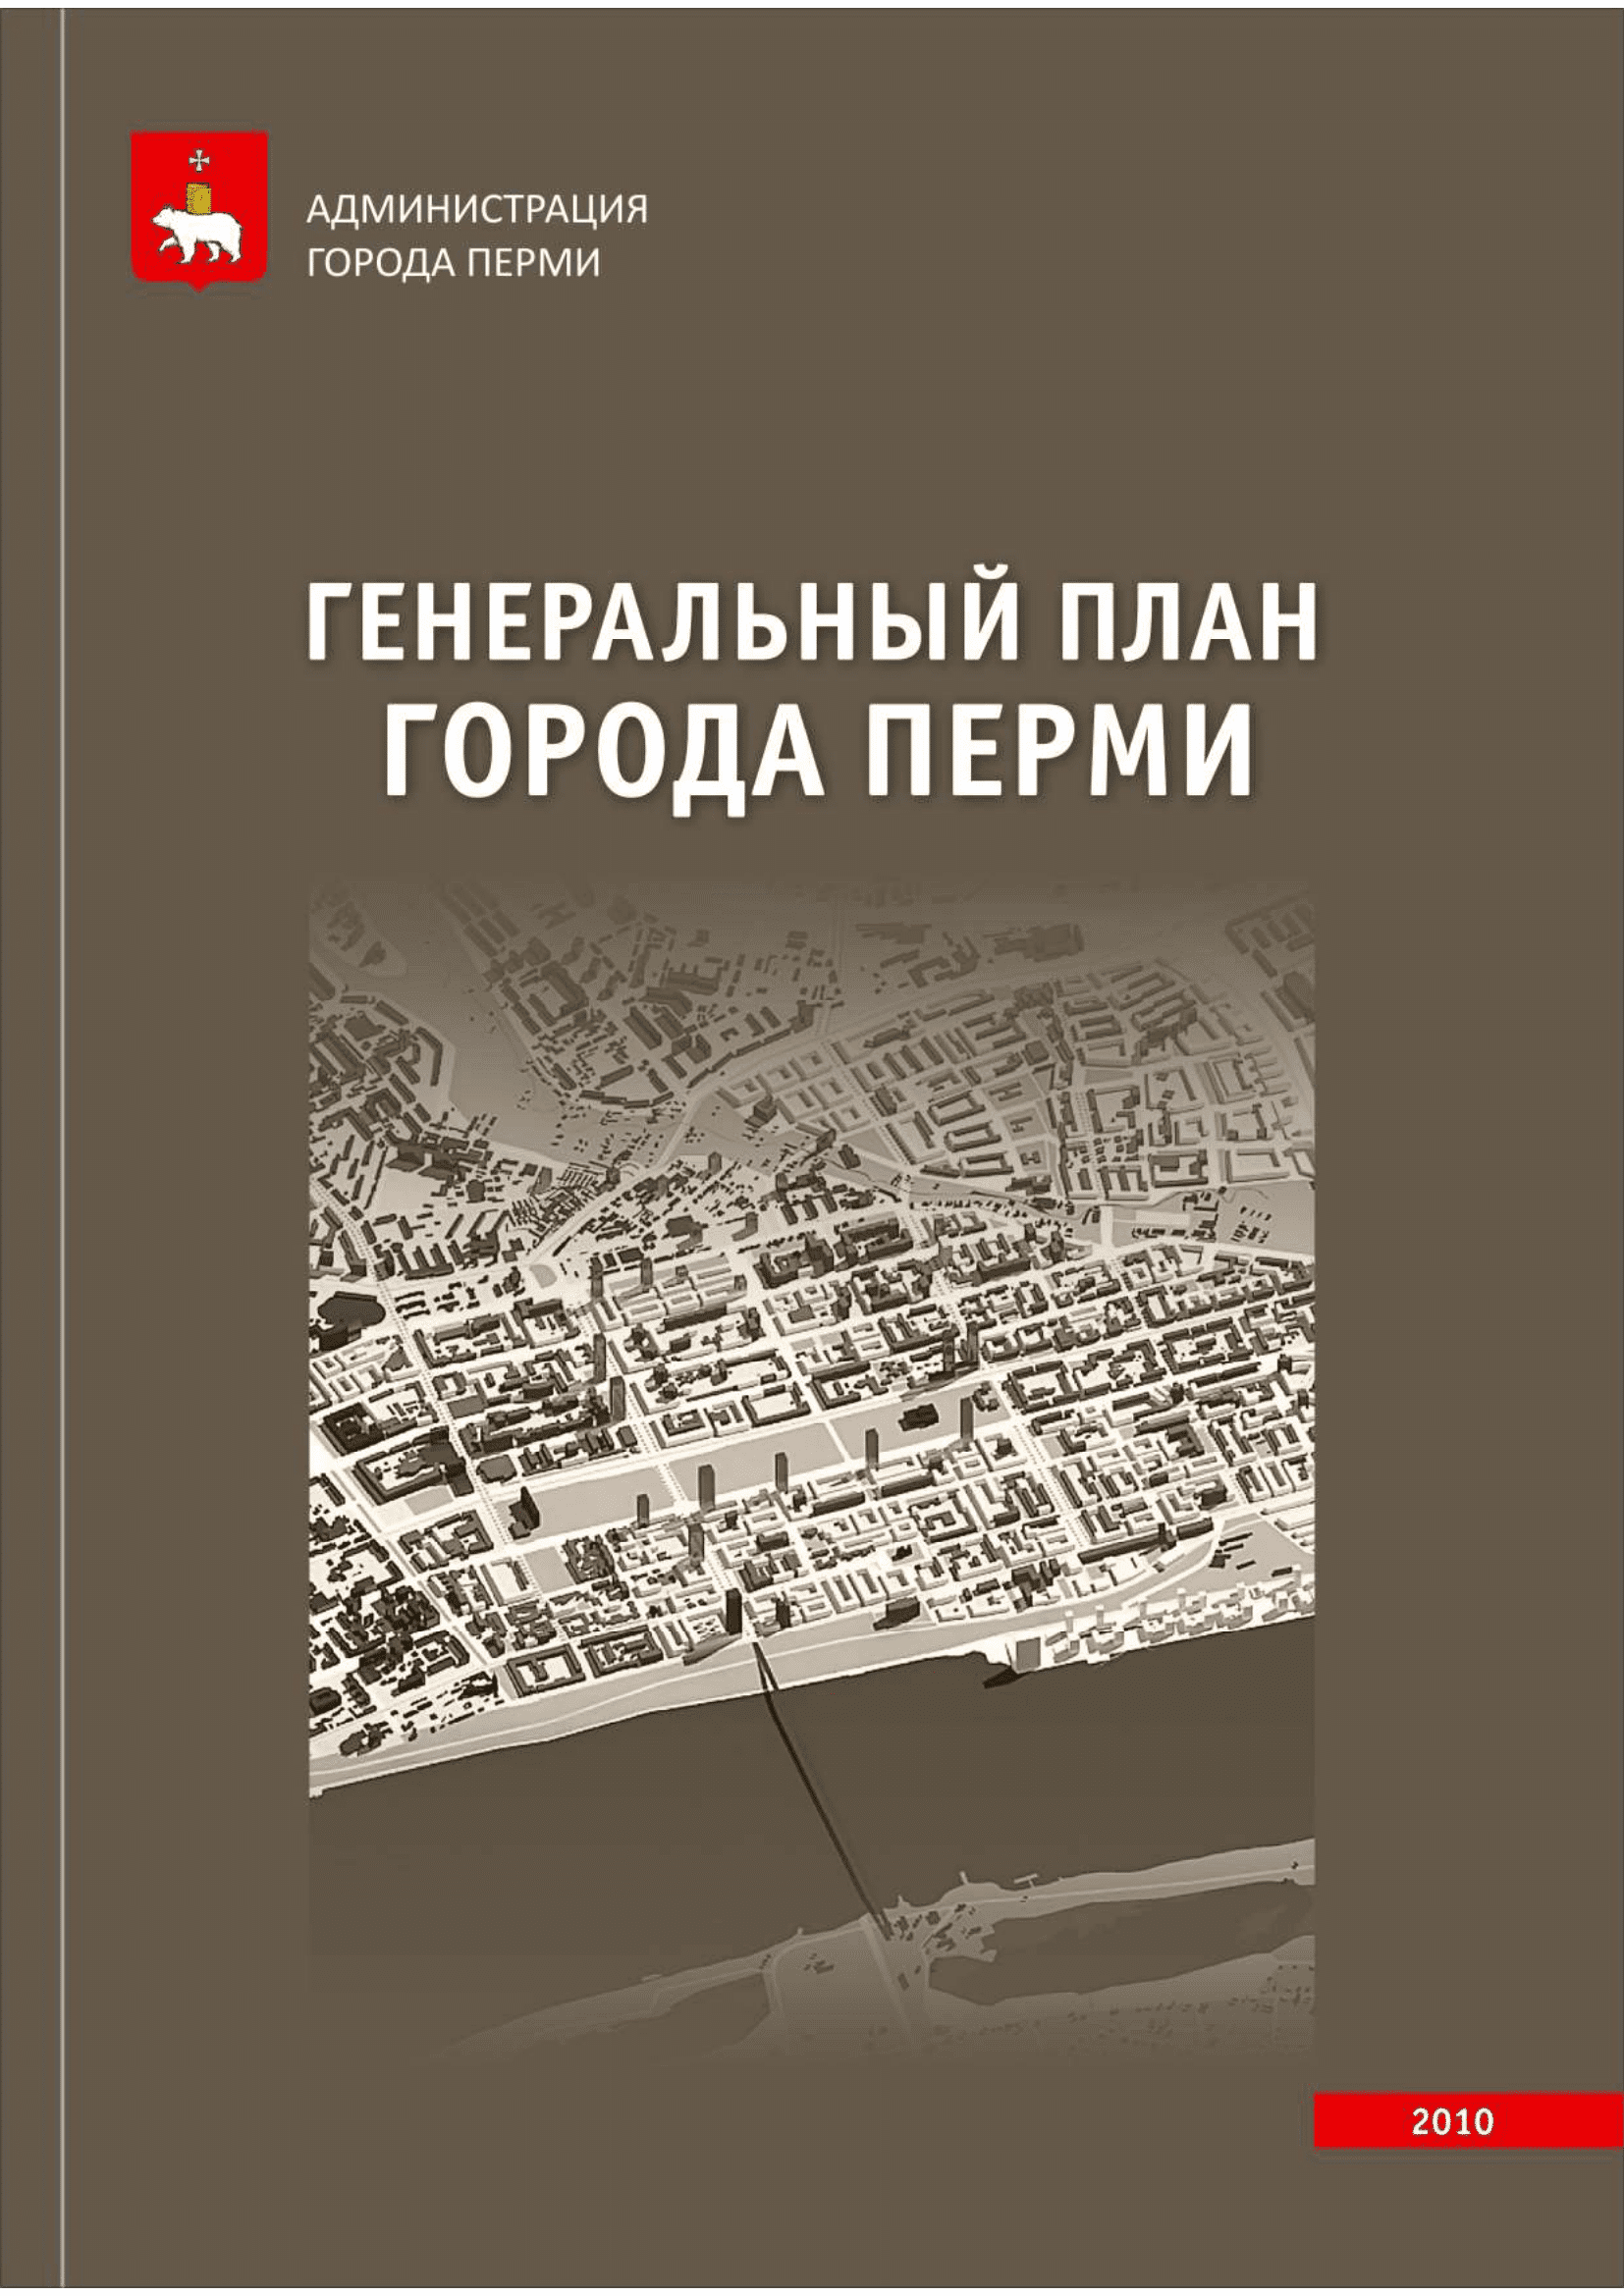 Обложка книги генерального плана города Перми, первая